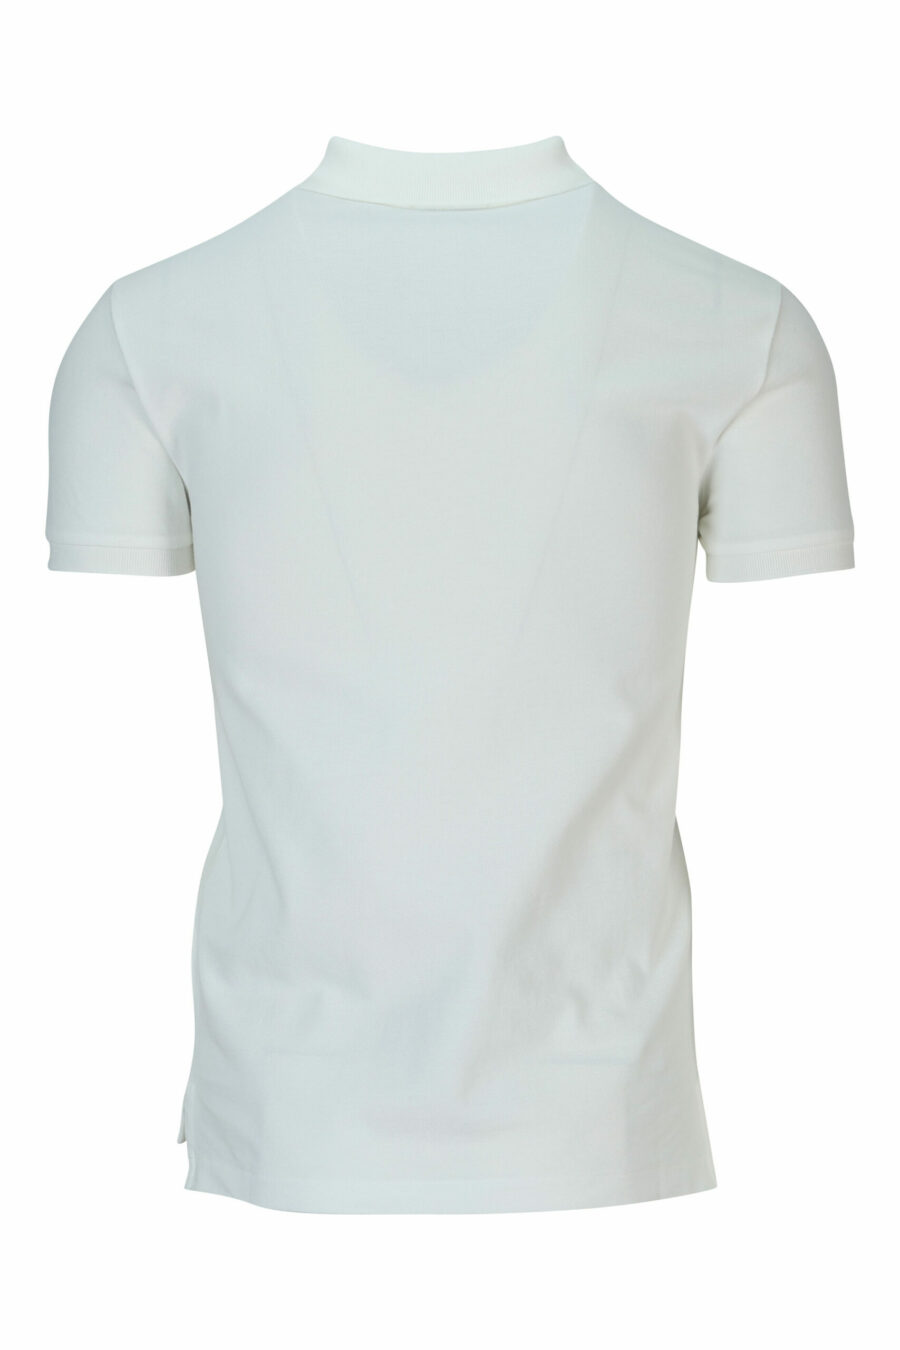 Weißes Poloshirt mit Mini-Logo "Polo" - 3603759897999 1 skaliert